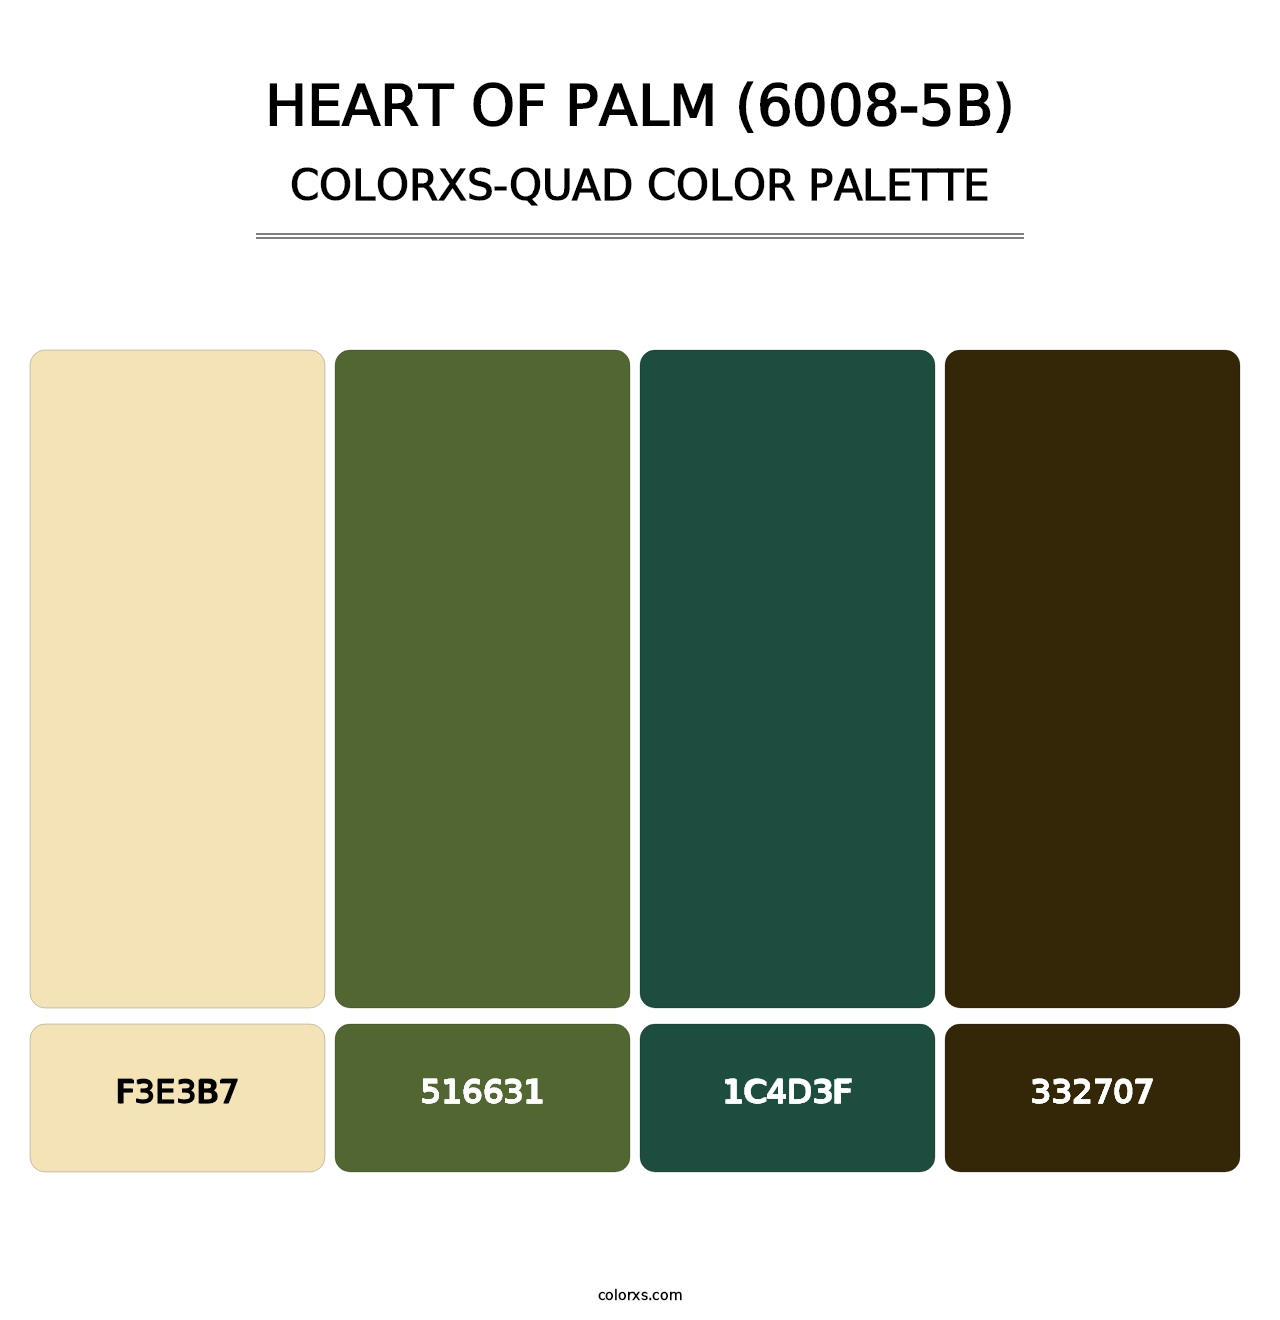 Heart of Palm (6008-5B) - Colorxs Quad Palette